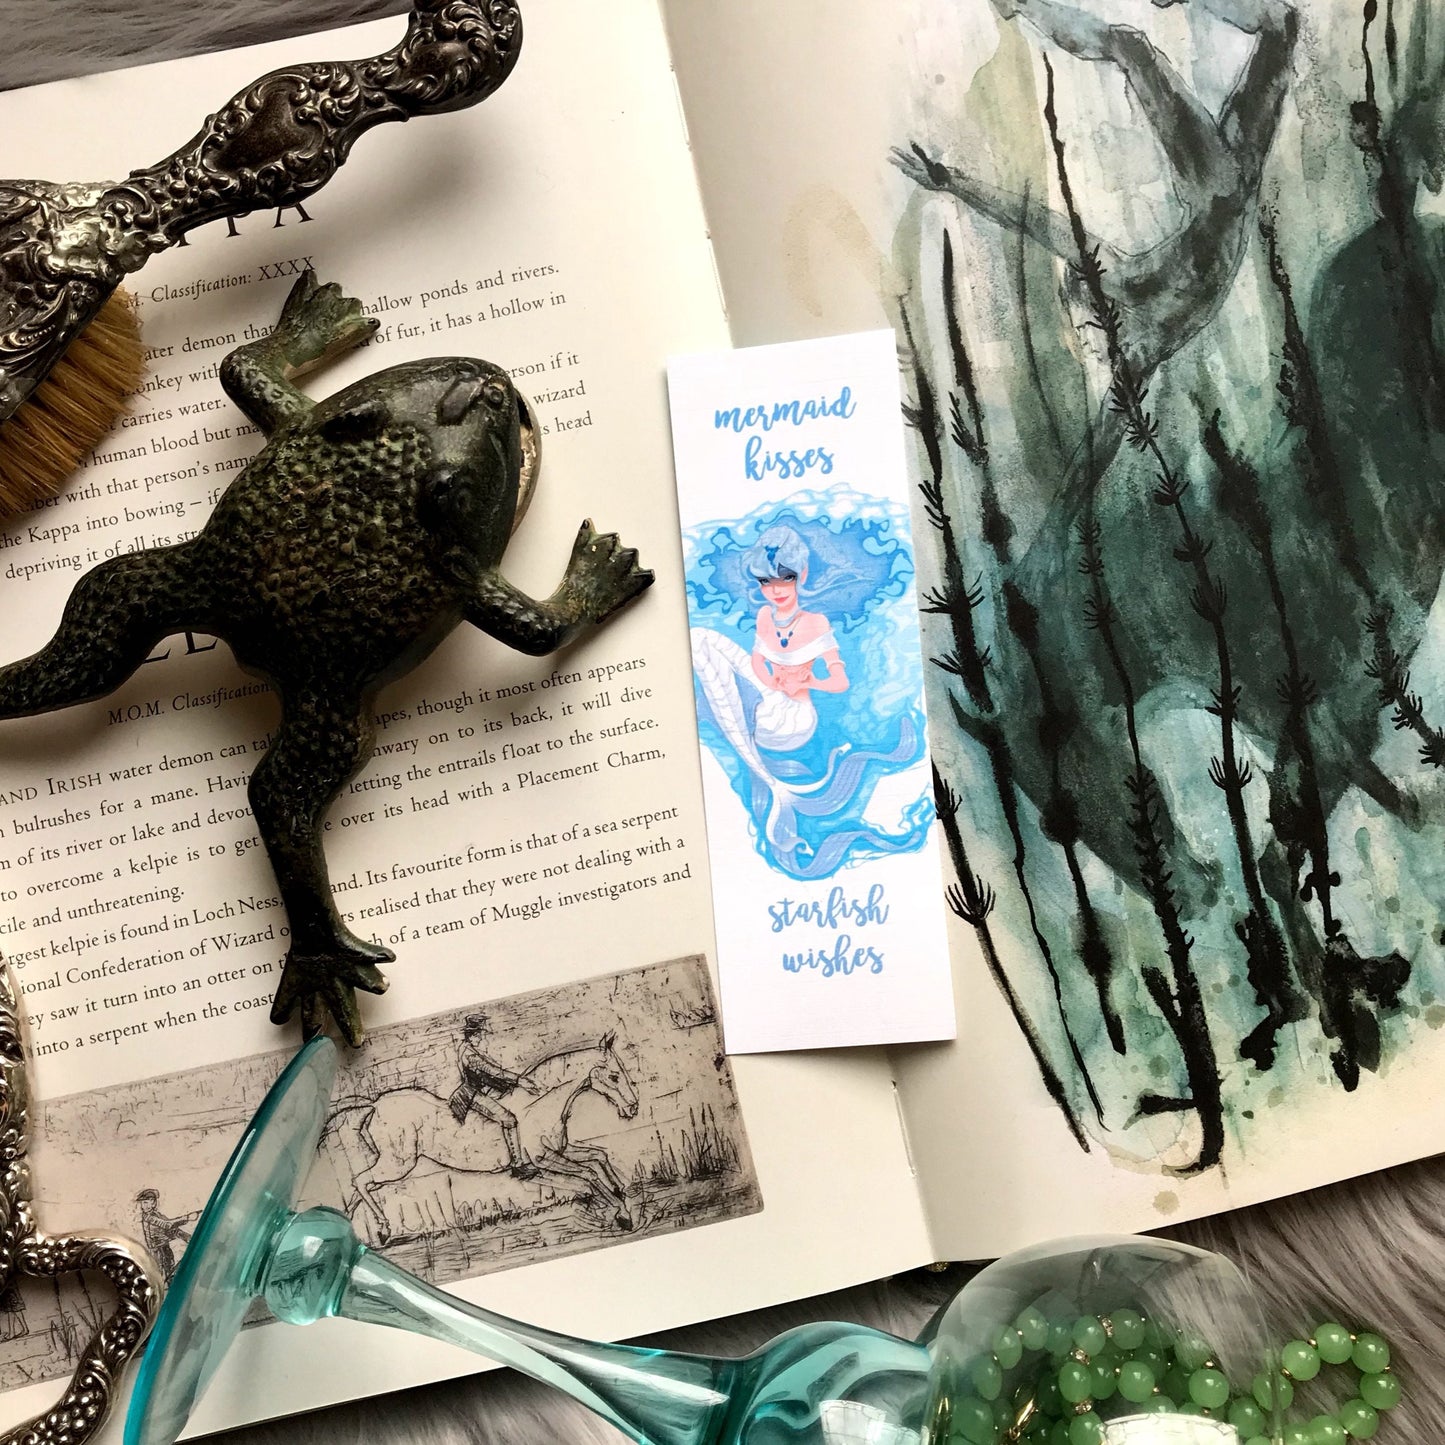 Mermaid Kisses and Starfish Wishes Bookmark